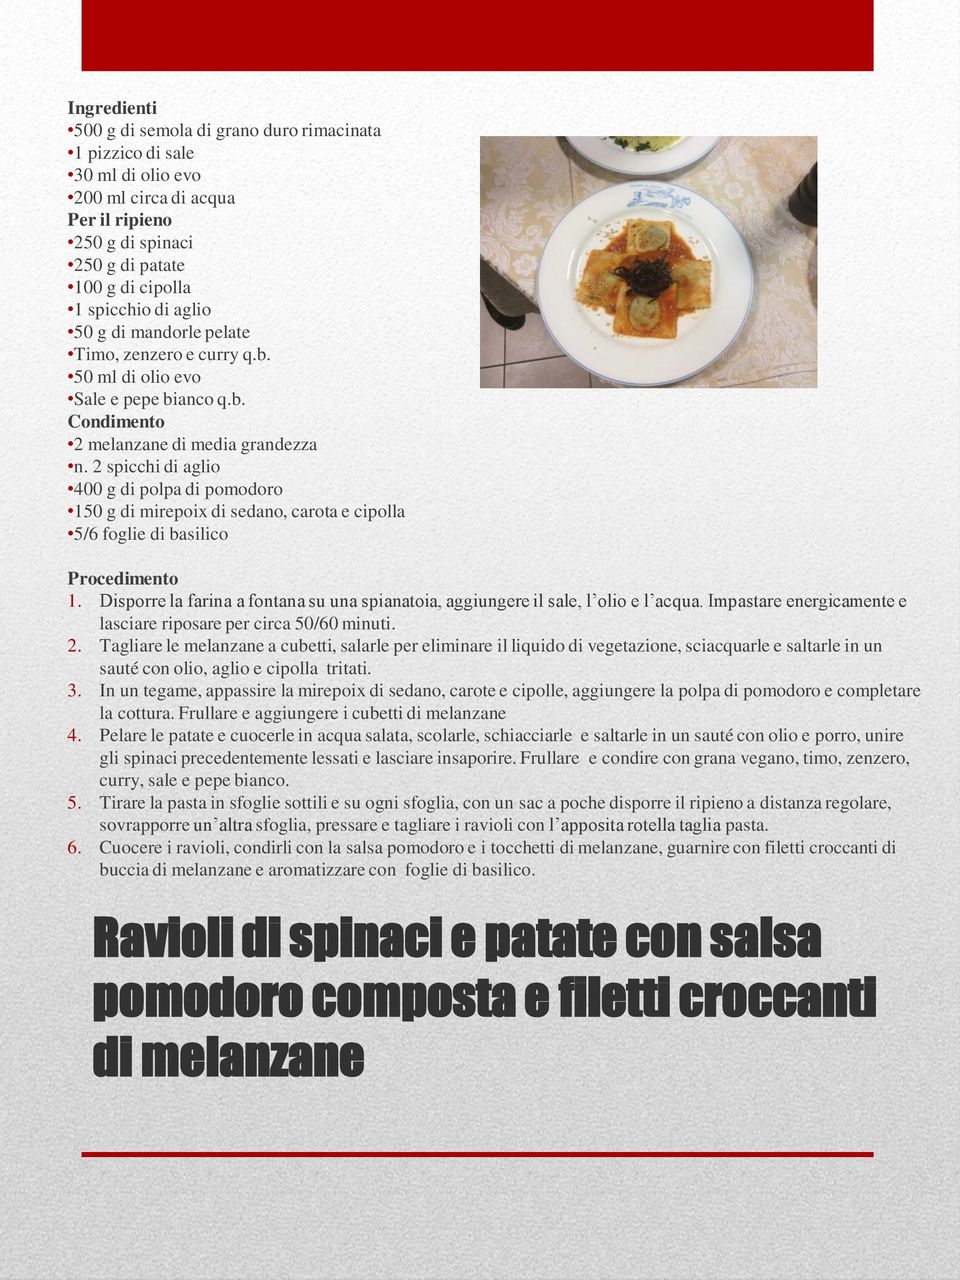 2 spicchi di aglio 400 g di polpa di pomodoro 150 g di mirepoix di sedano, carota e cipolla 5/6 foglie di basilico 1.